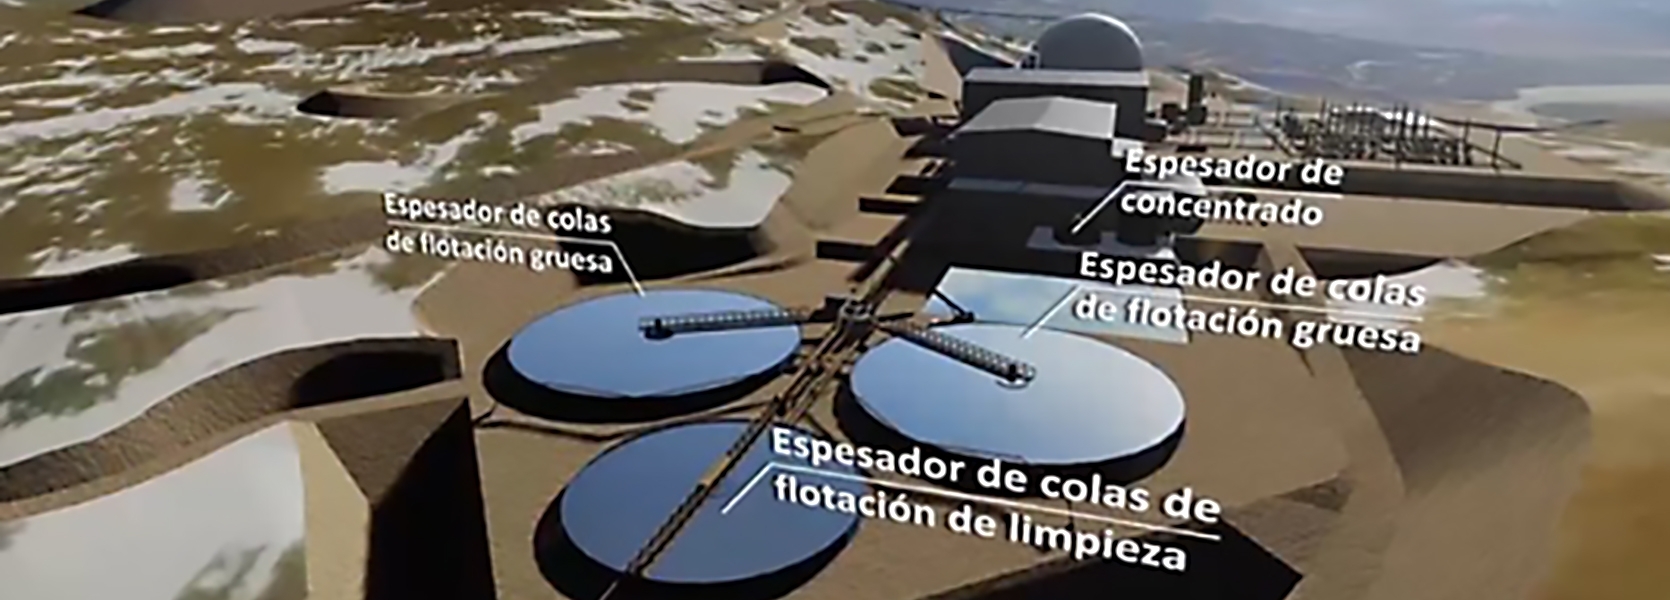 Image: Proyecto de cobre-oro Josemaría: Las animaciones mineras en 3D simplifican los procesos complejos para todos los públicos